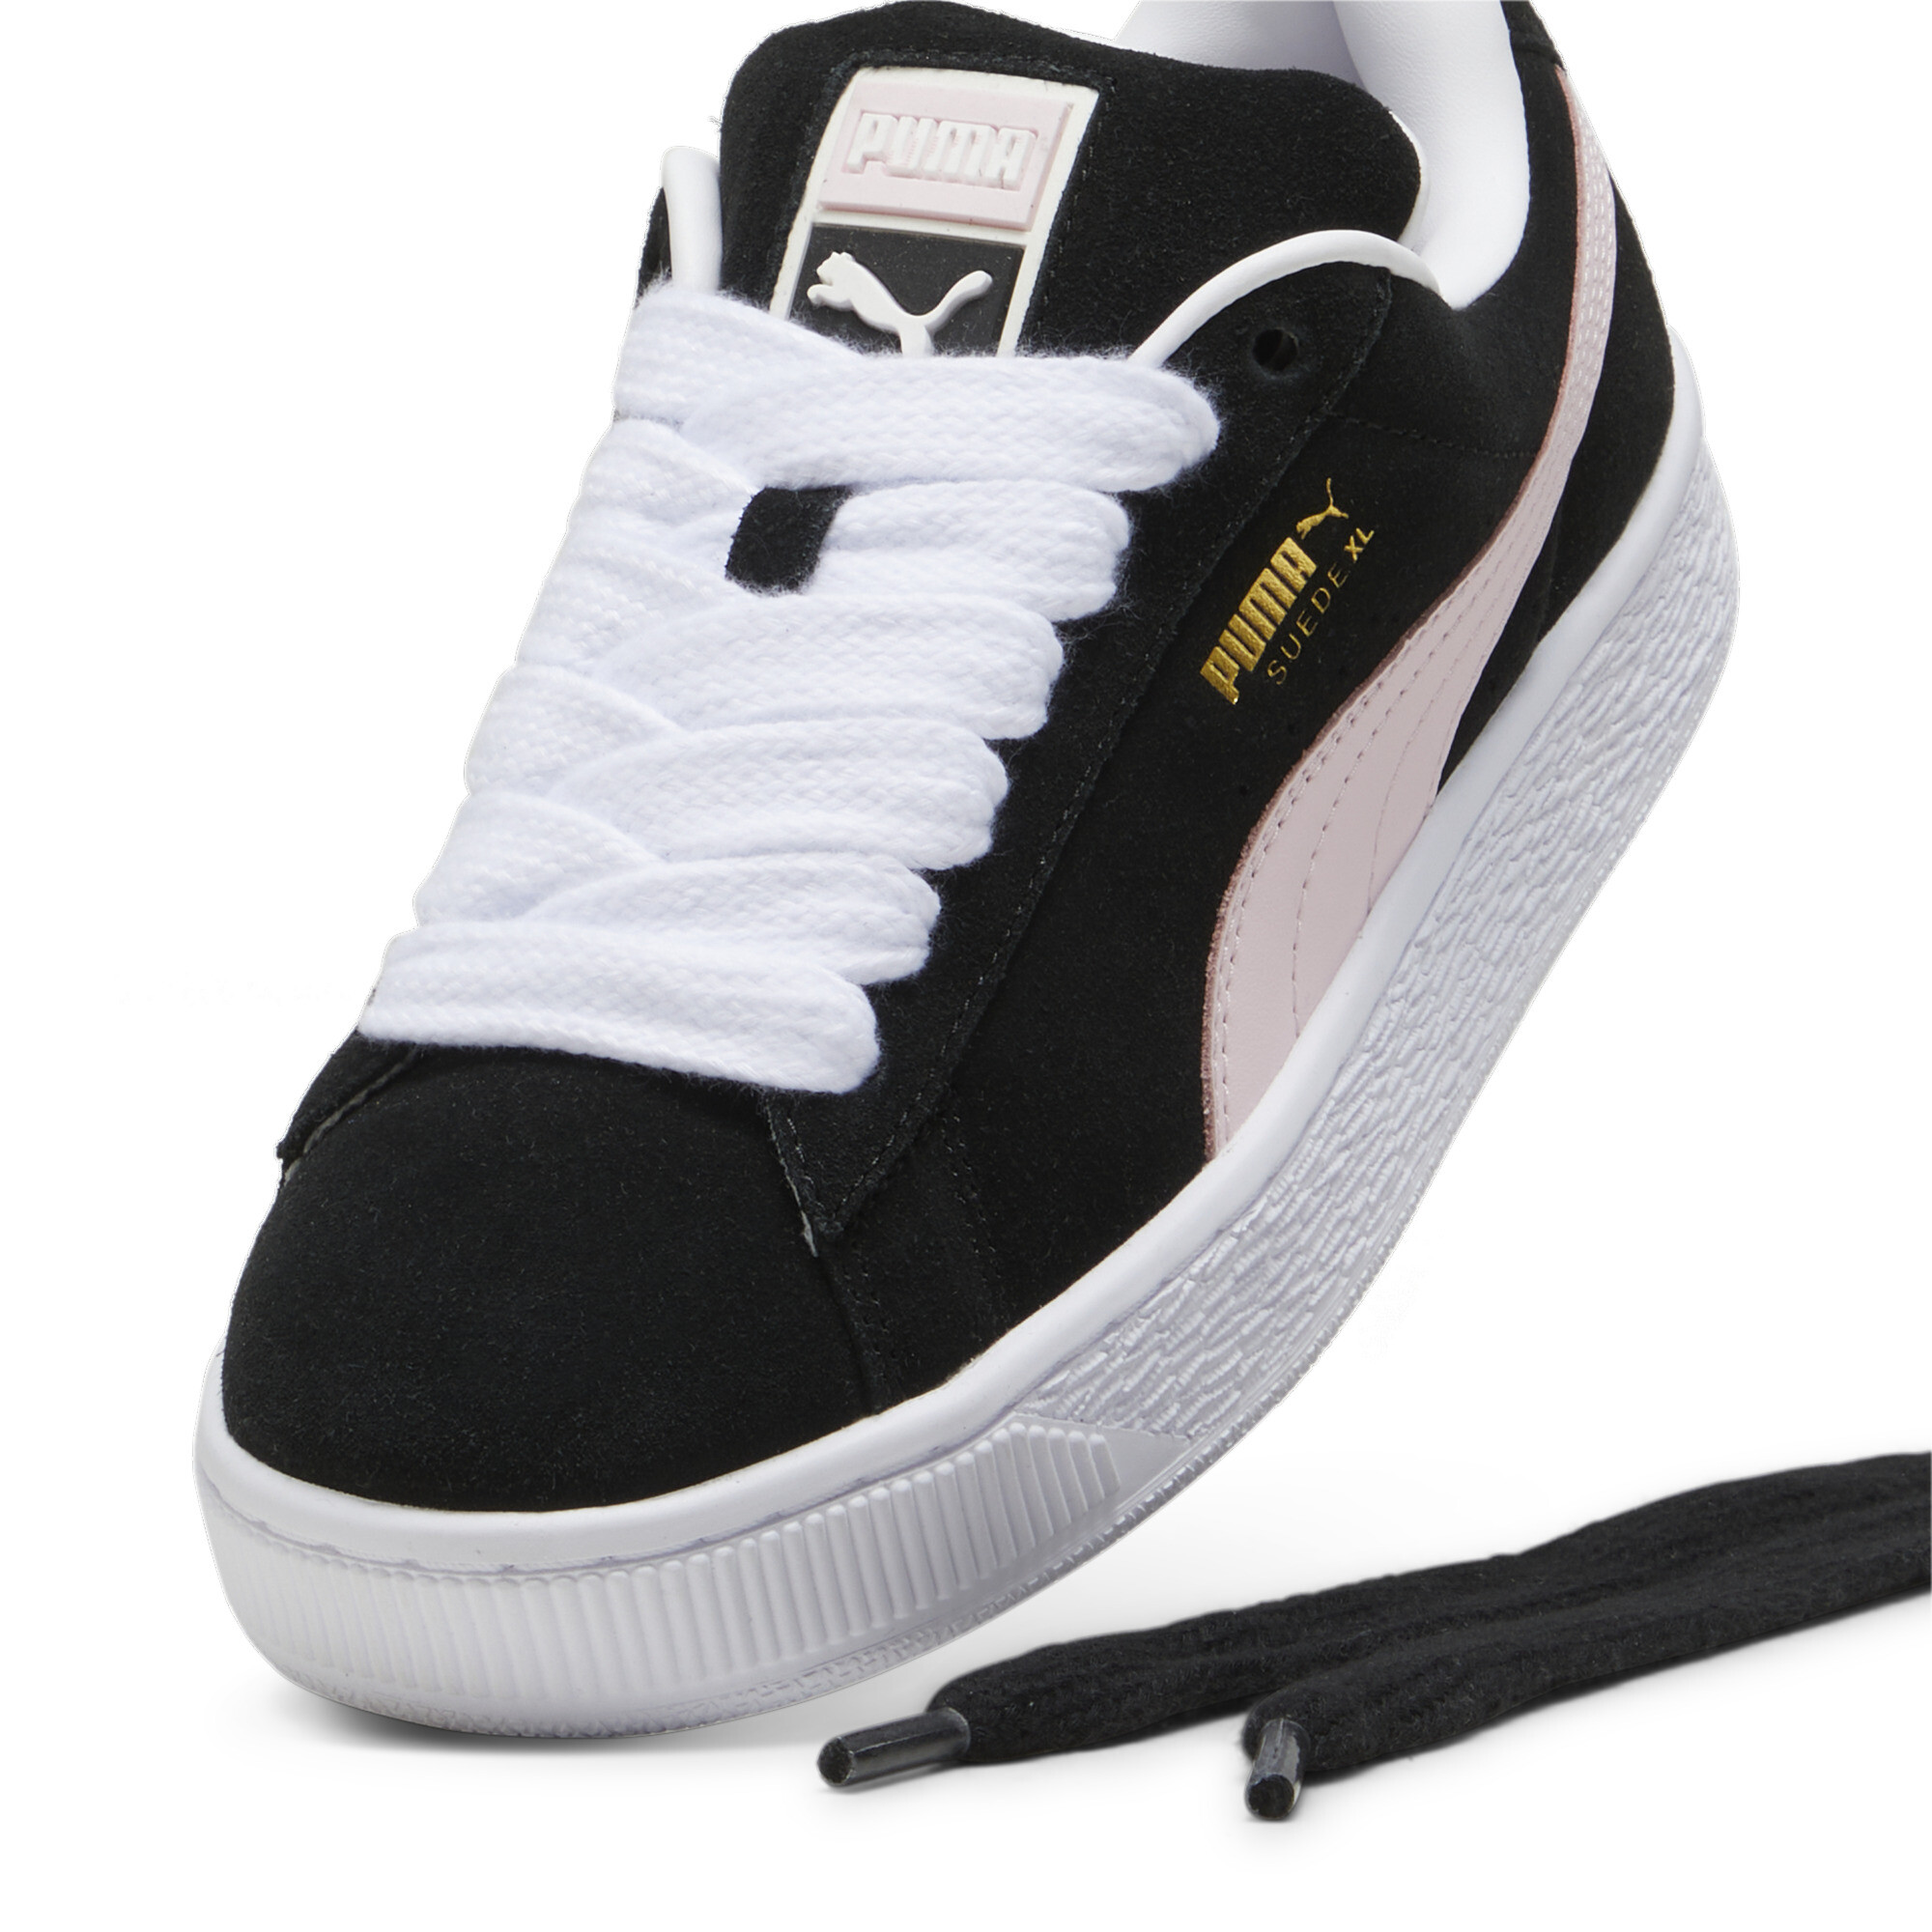 Puma Suede XL Sneakers Unisex, Black, Size 39, Shoes